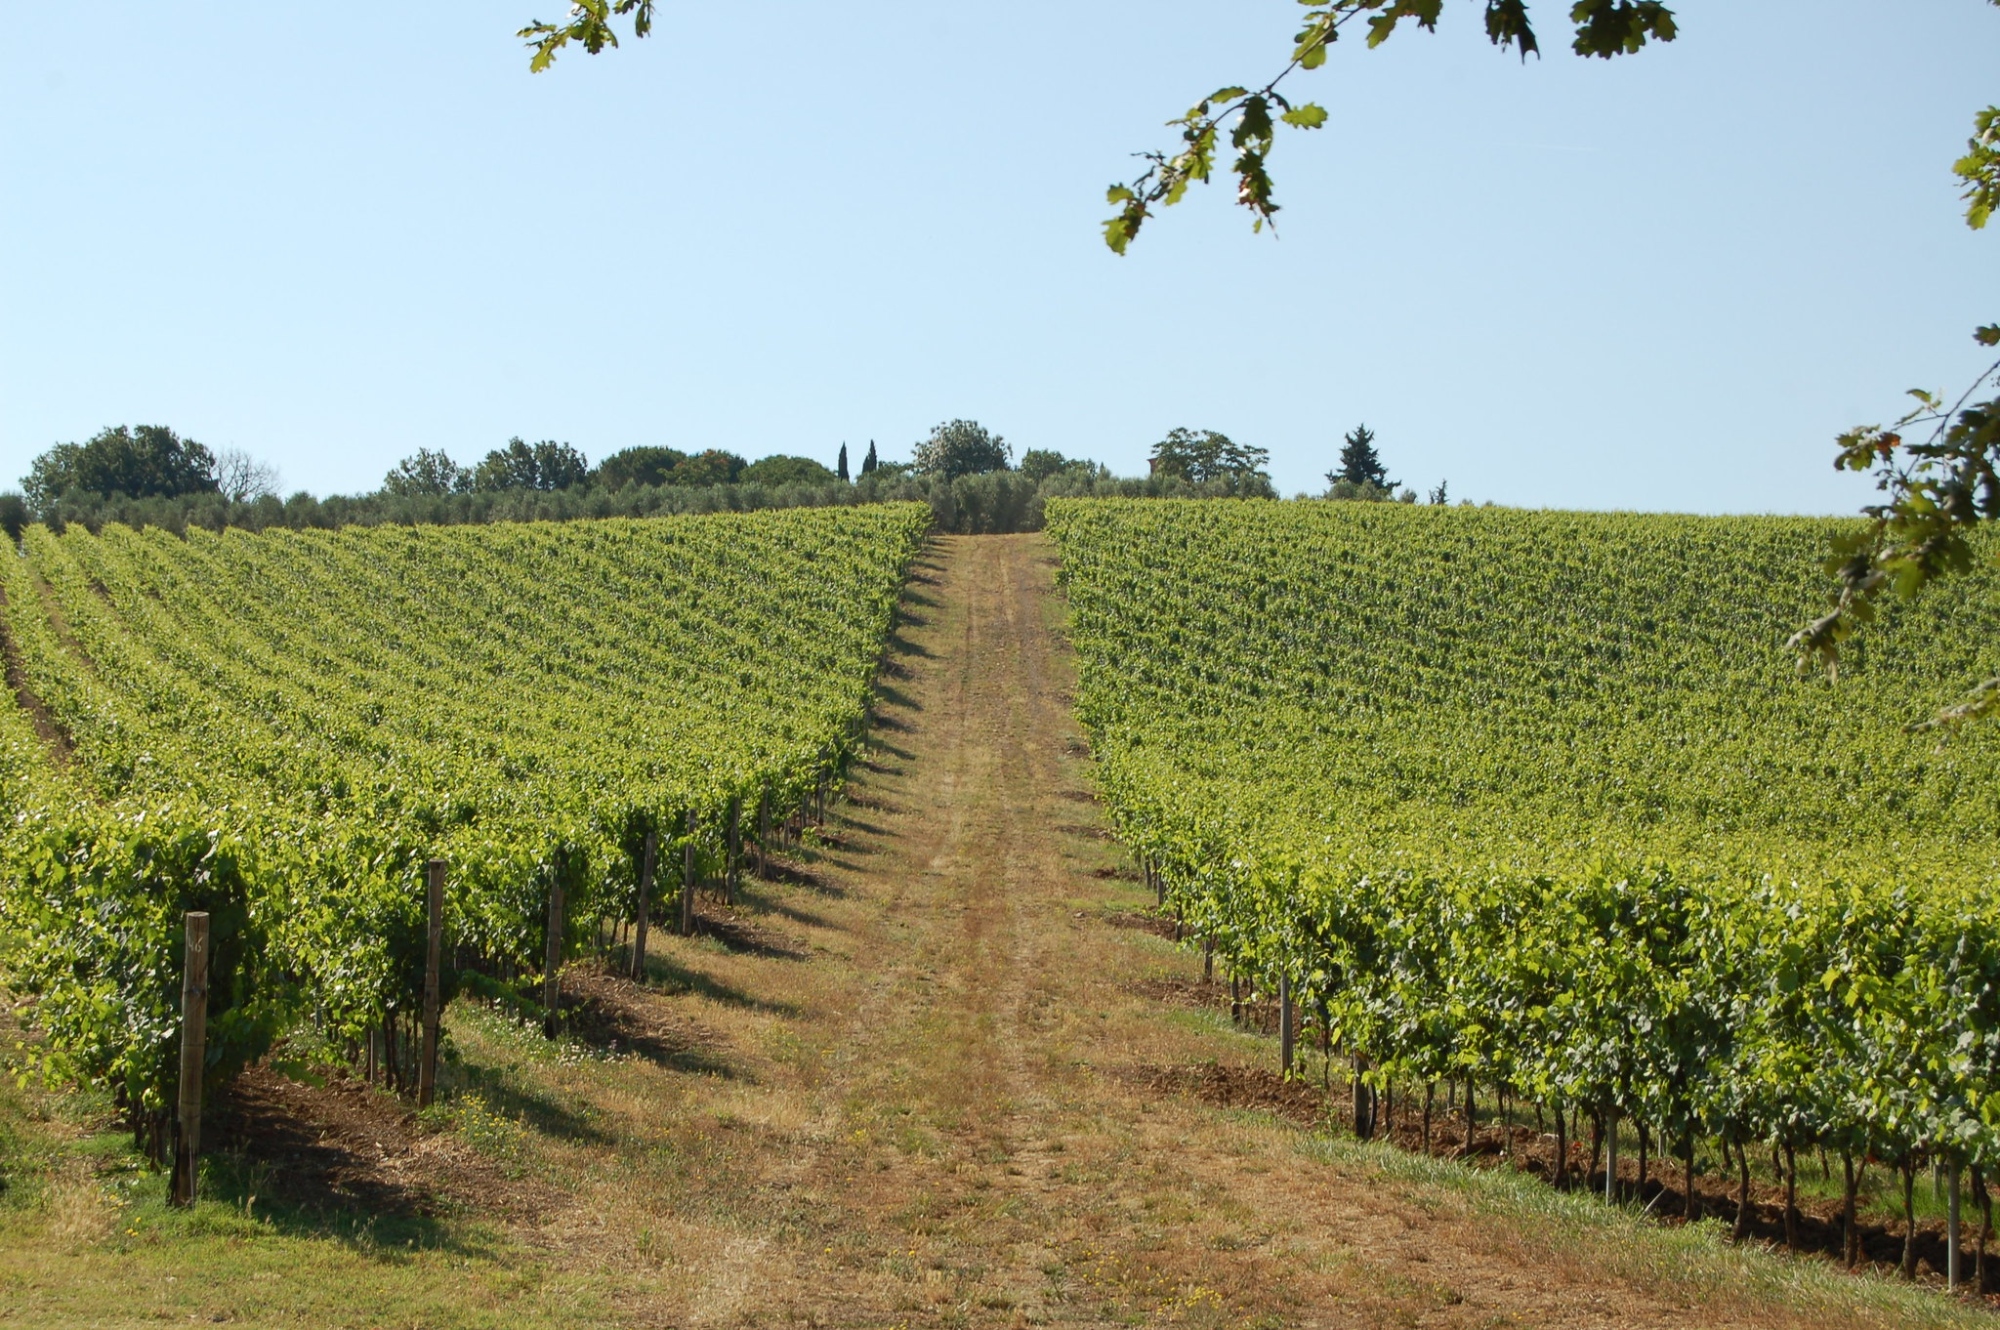 I vini DOCG della Toscana